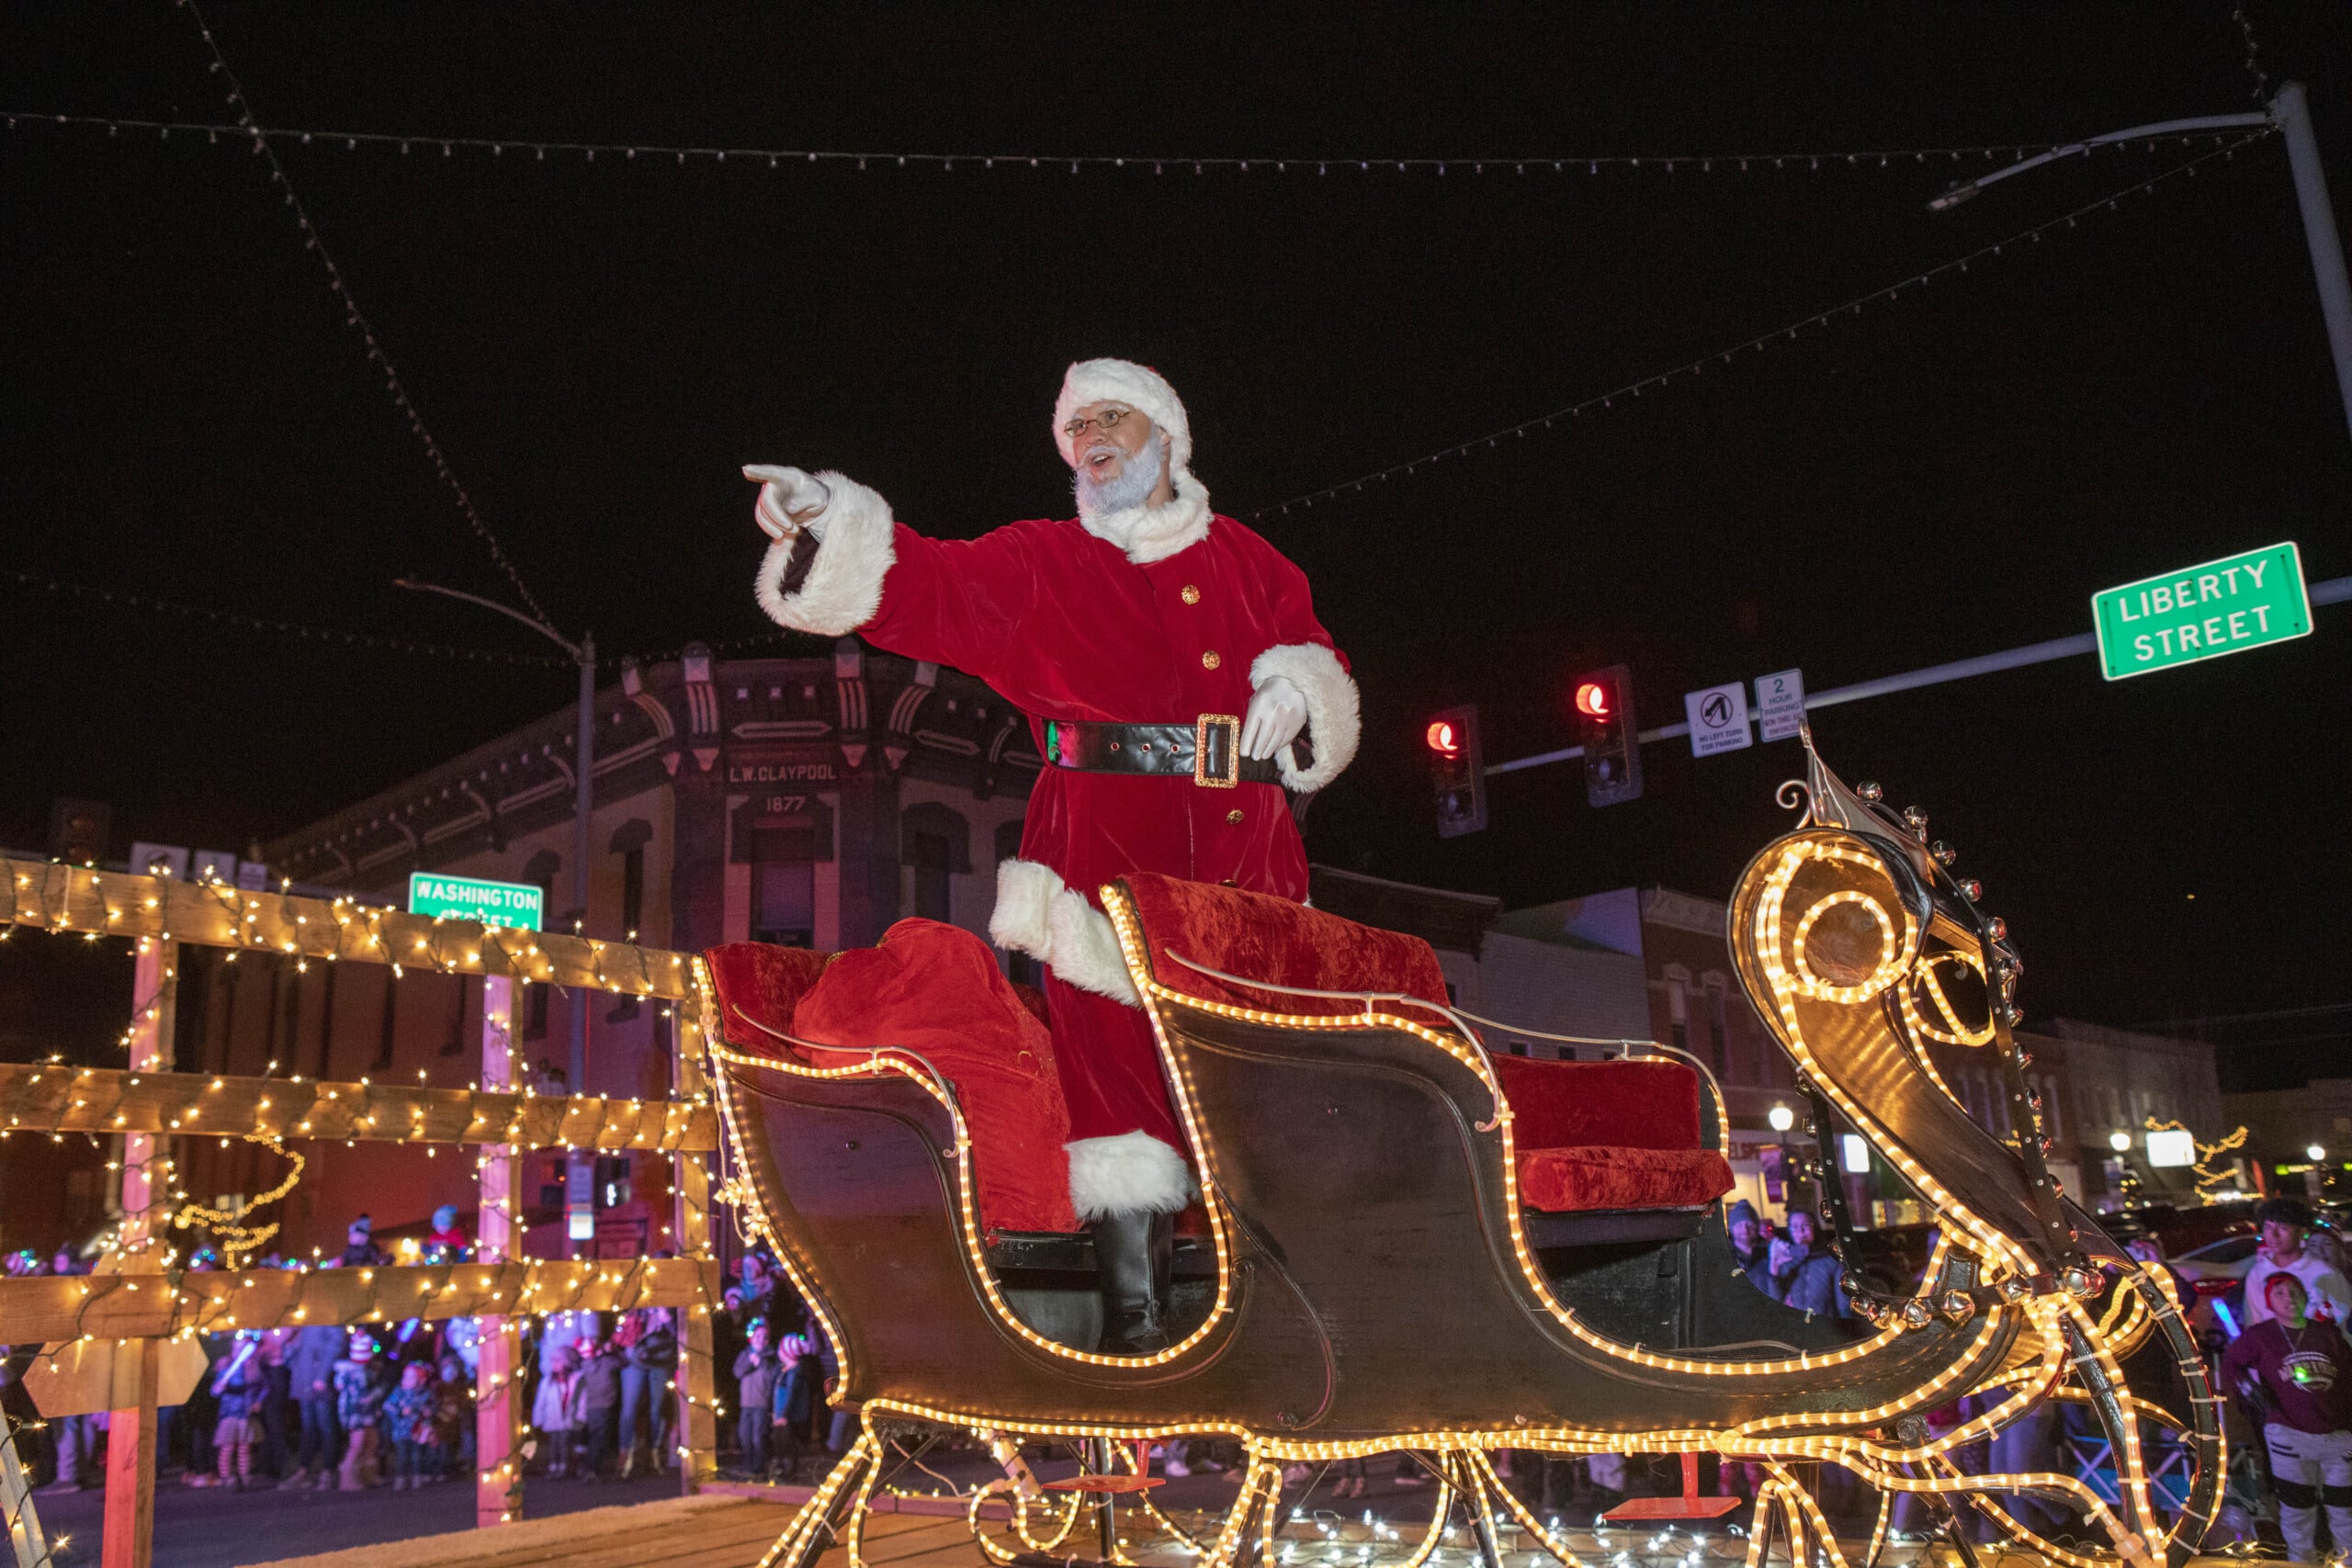 Santa Claus waving from illuminated sleigh during night parade.